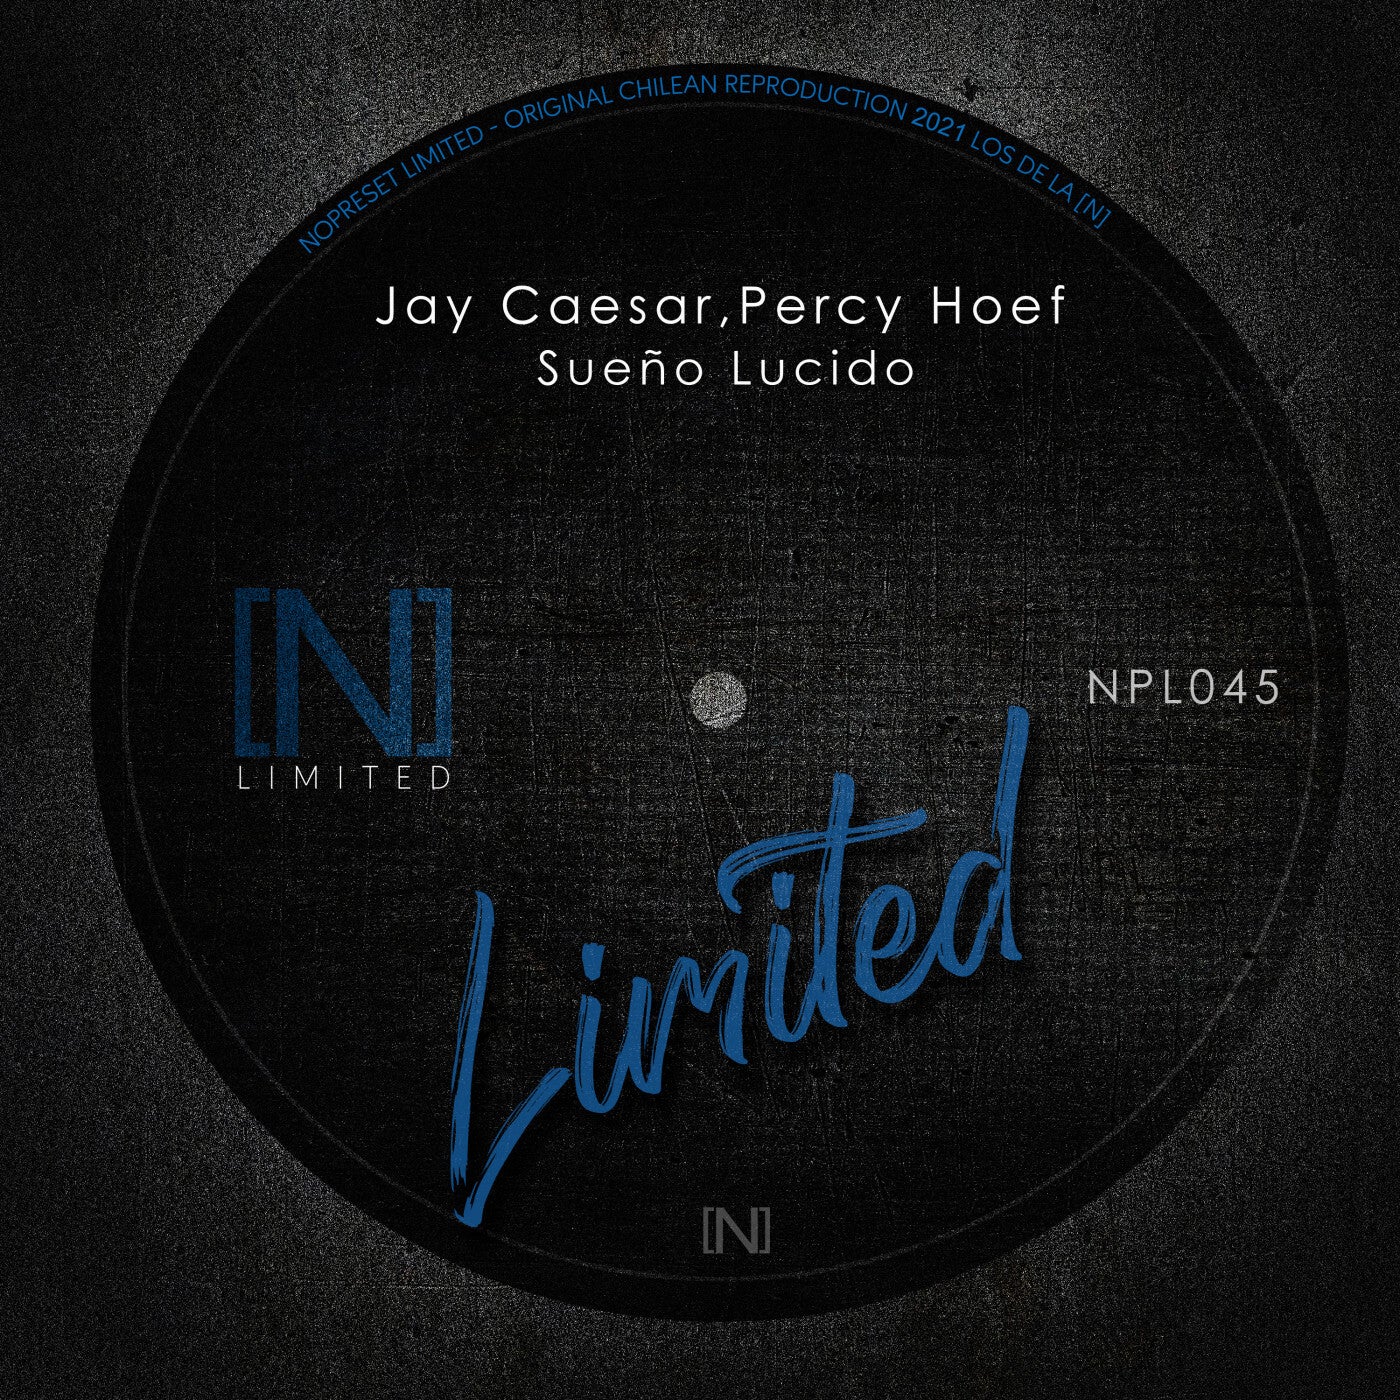 Jay Caesar, Percy Hoef – Sueño Lucido [NPL045]